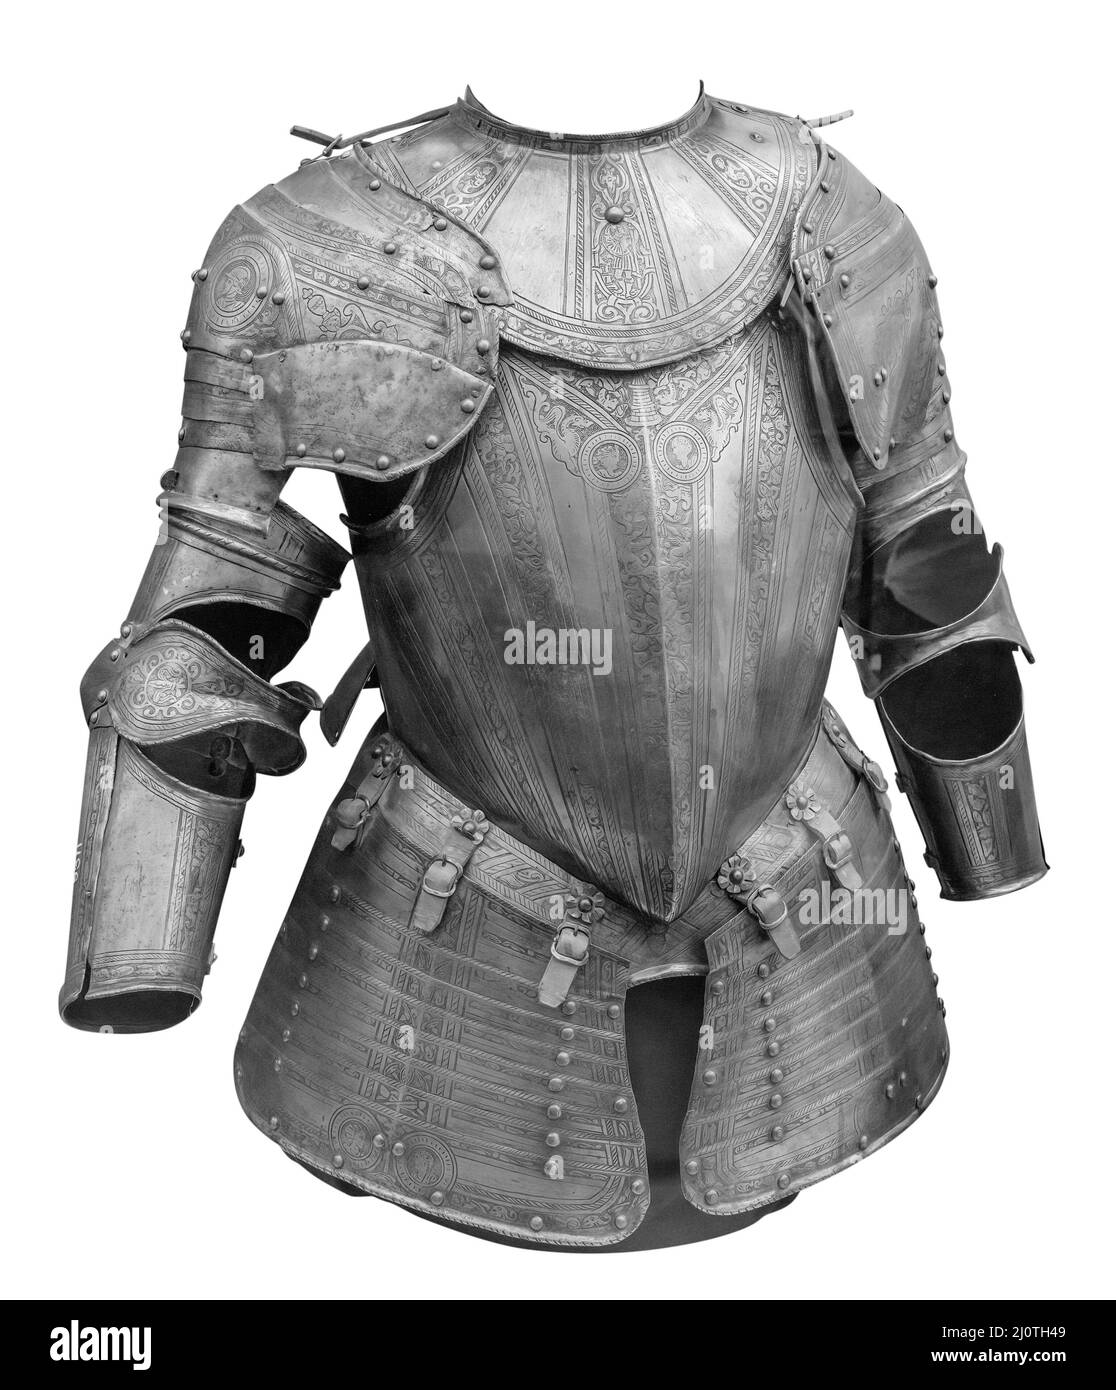 Combinaison médiévale de protection d'armure isolée sur fond blanc avec passe-cheveux.Ancienne armure métallique en acier Banque D'Images